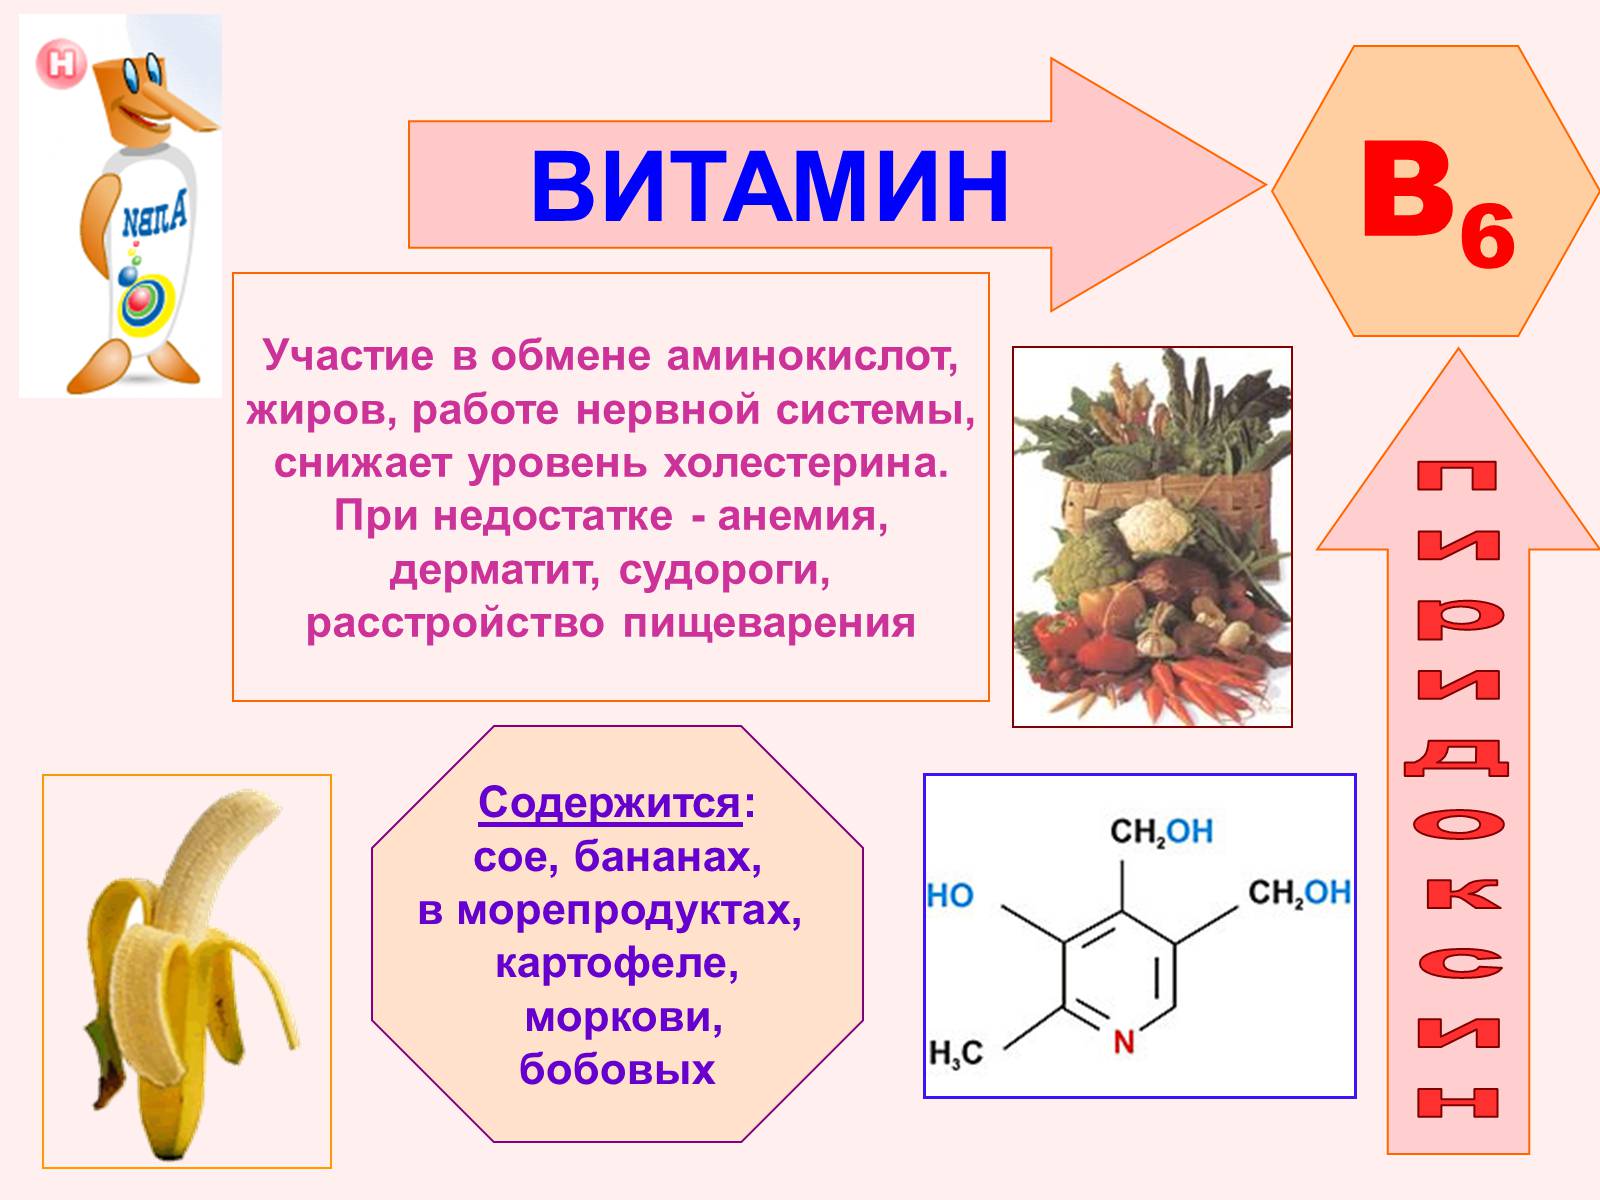 Б 6 для организма. Роль витамина б6. Название болезни витамина b6. Витамин b6 строение. Витамин в6 физиологическое название.